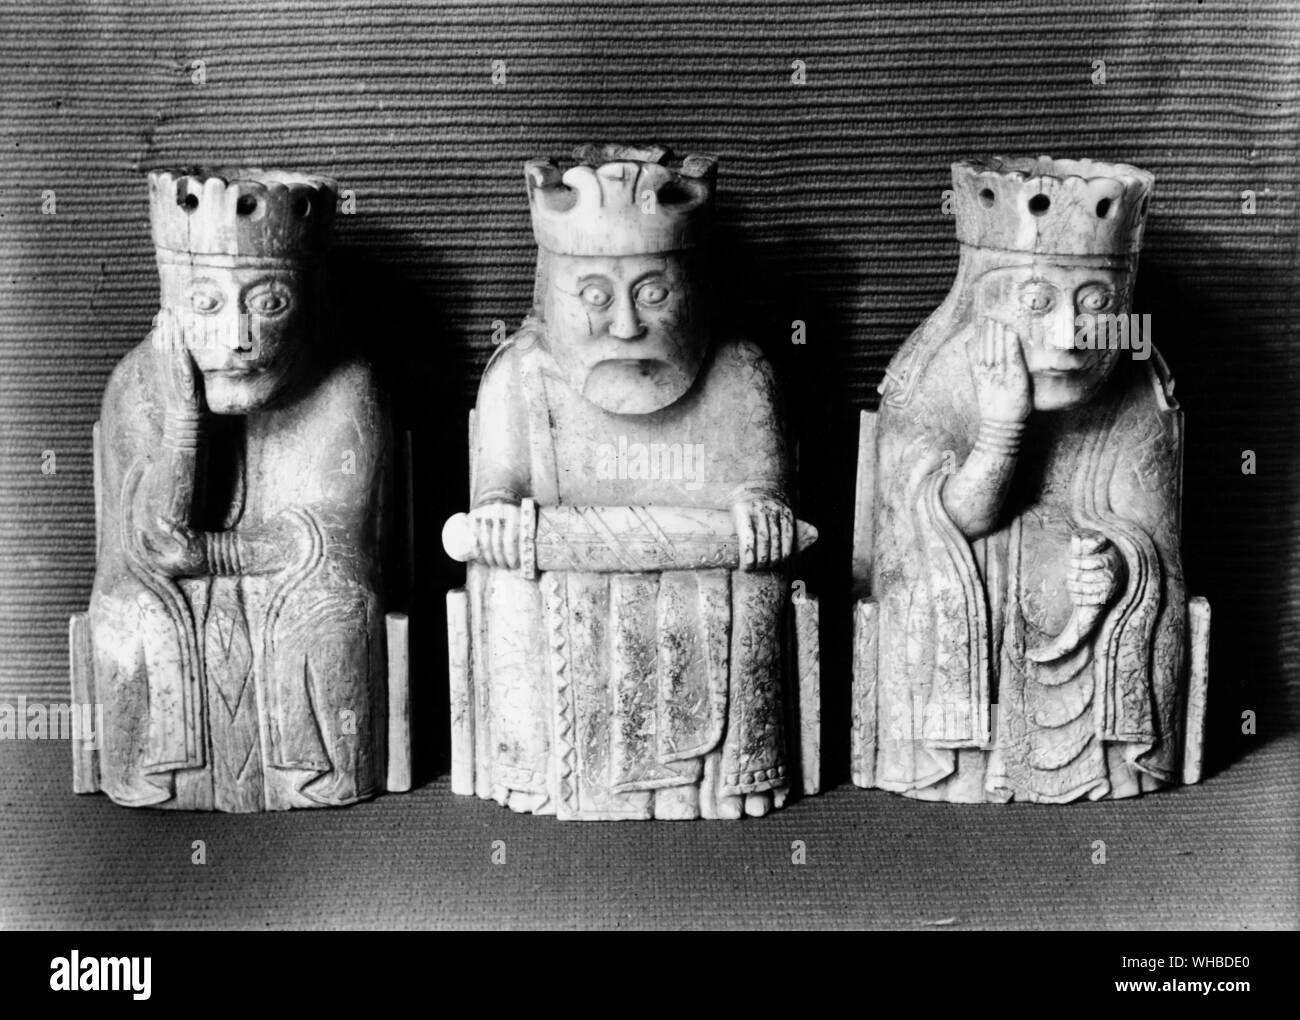 Skandinavier Schachfiguren: Walross-elfenbein, ein König und Zwei Königinnen c. 1200 AD. Entdeckt der Insel Lewis auf den Äußeren Hebriden von Schottland Stockfoto